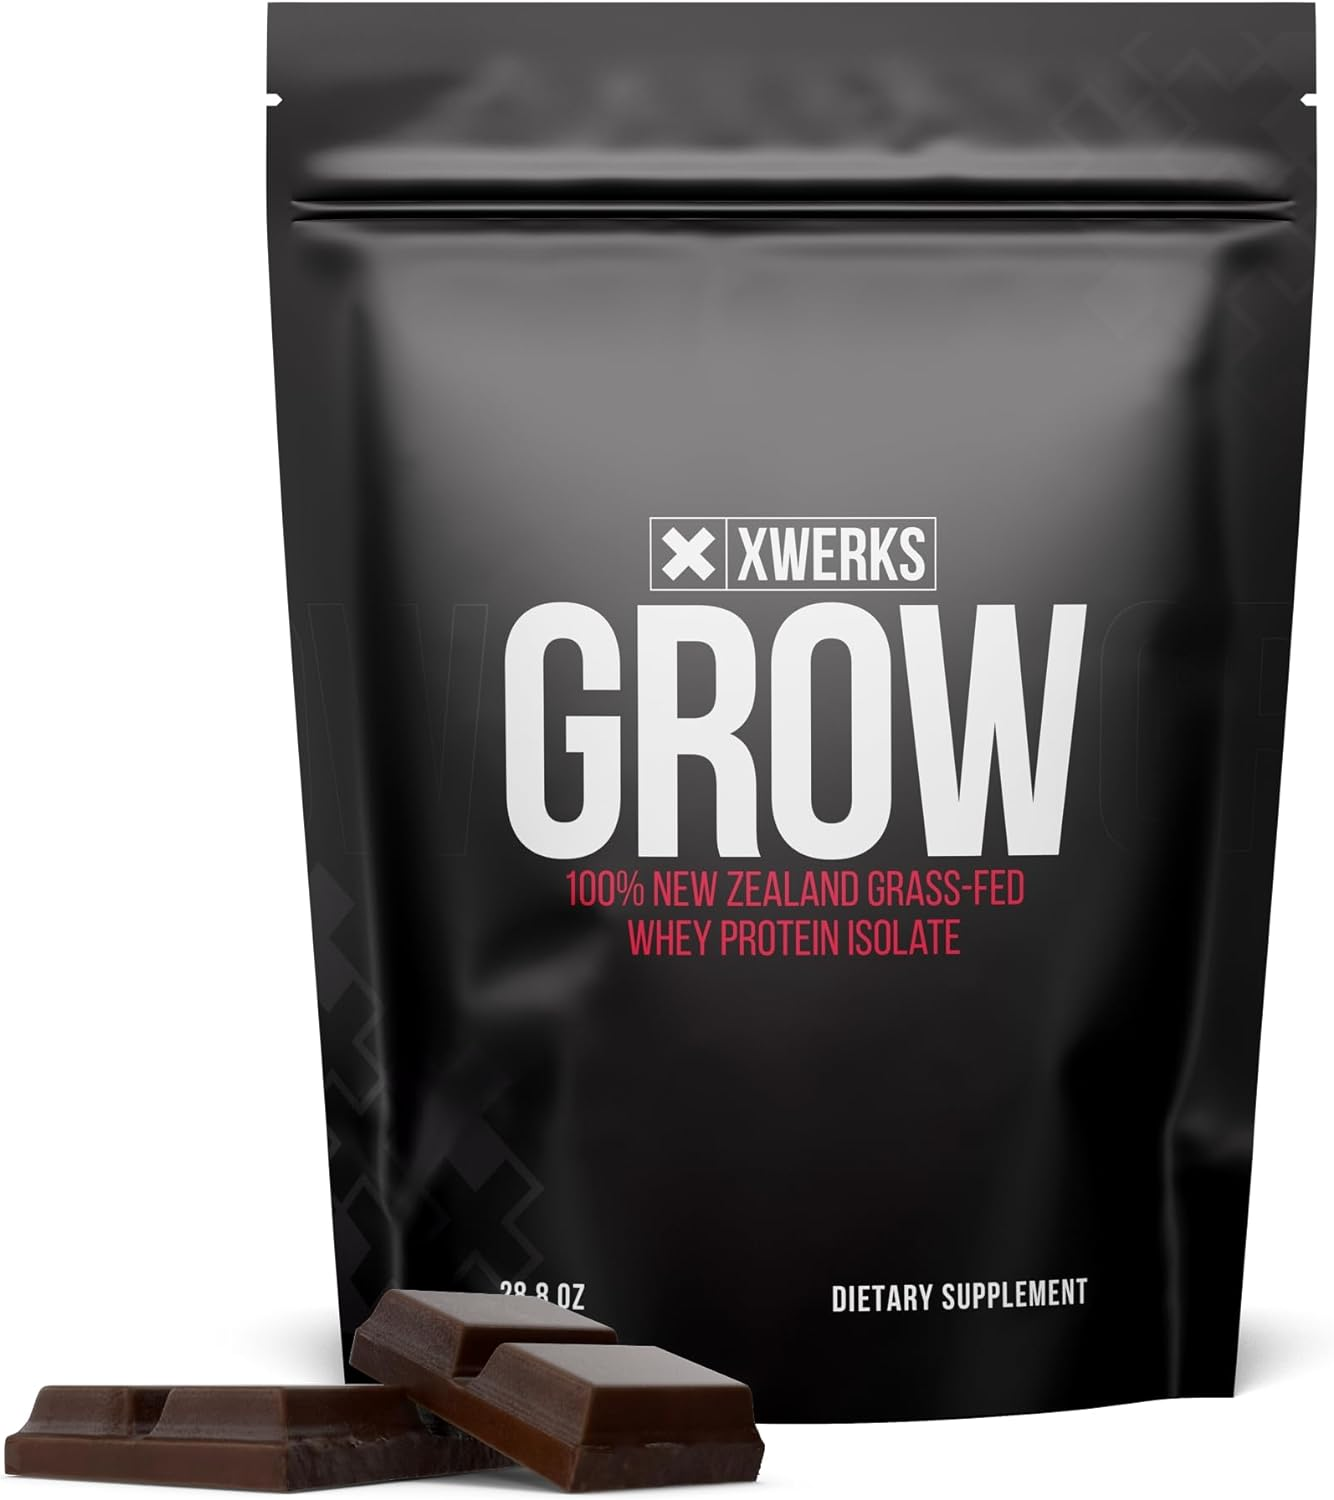 Xwerks Grow New Zealand 100% Grass-Fed Whey Protein Isolate